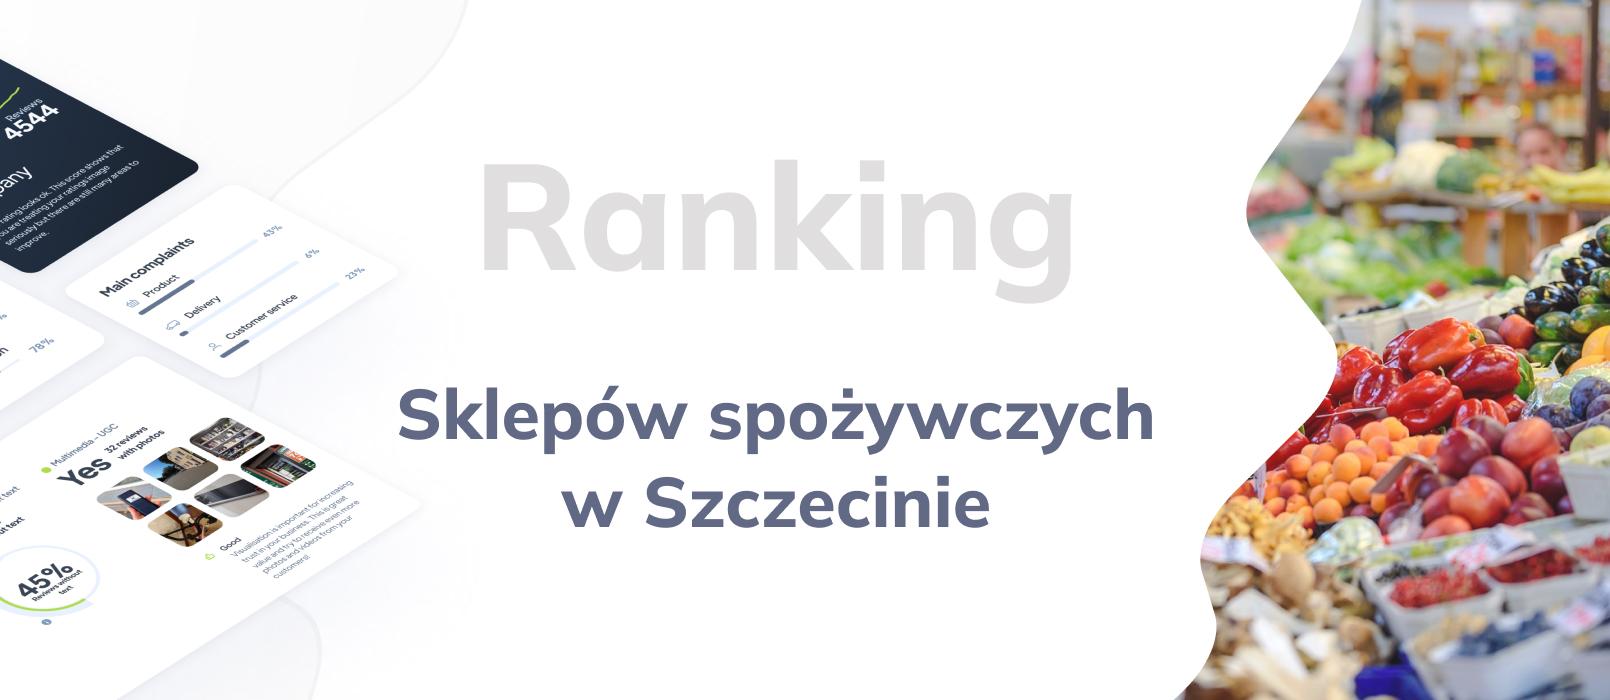 Sklepy spożywcze w Szczecinie - ranking TOP 10